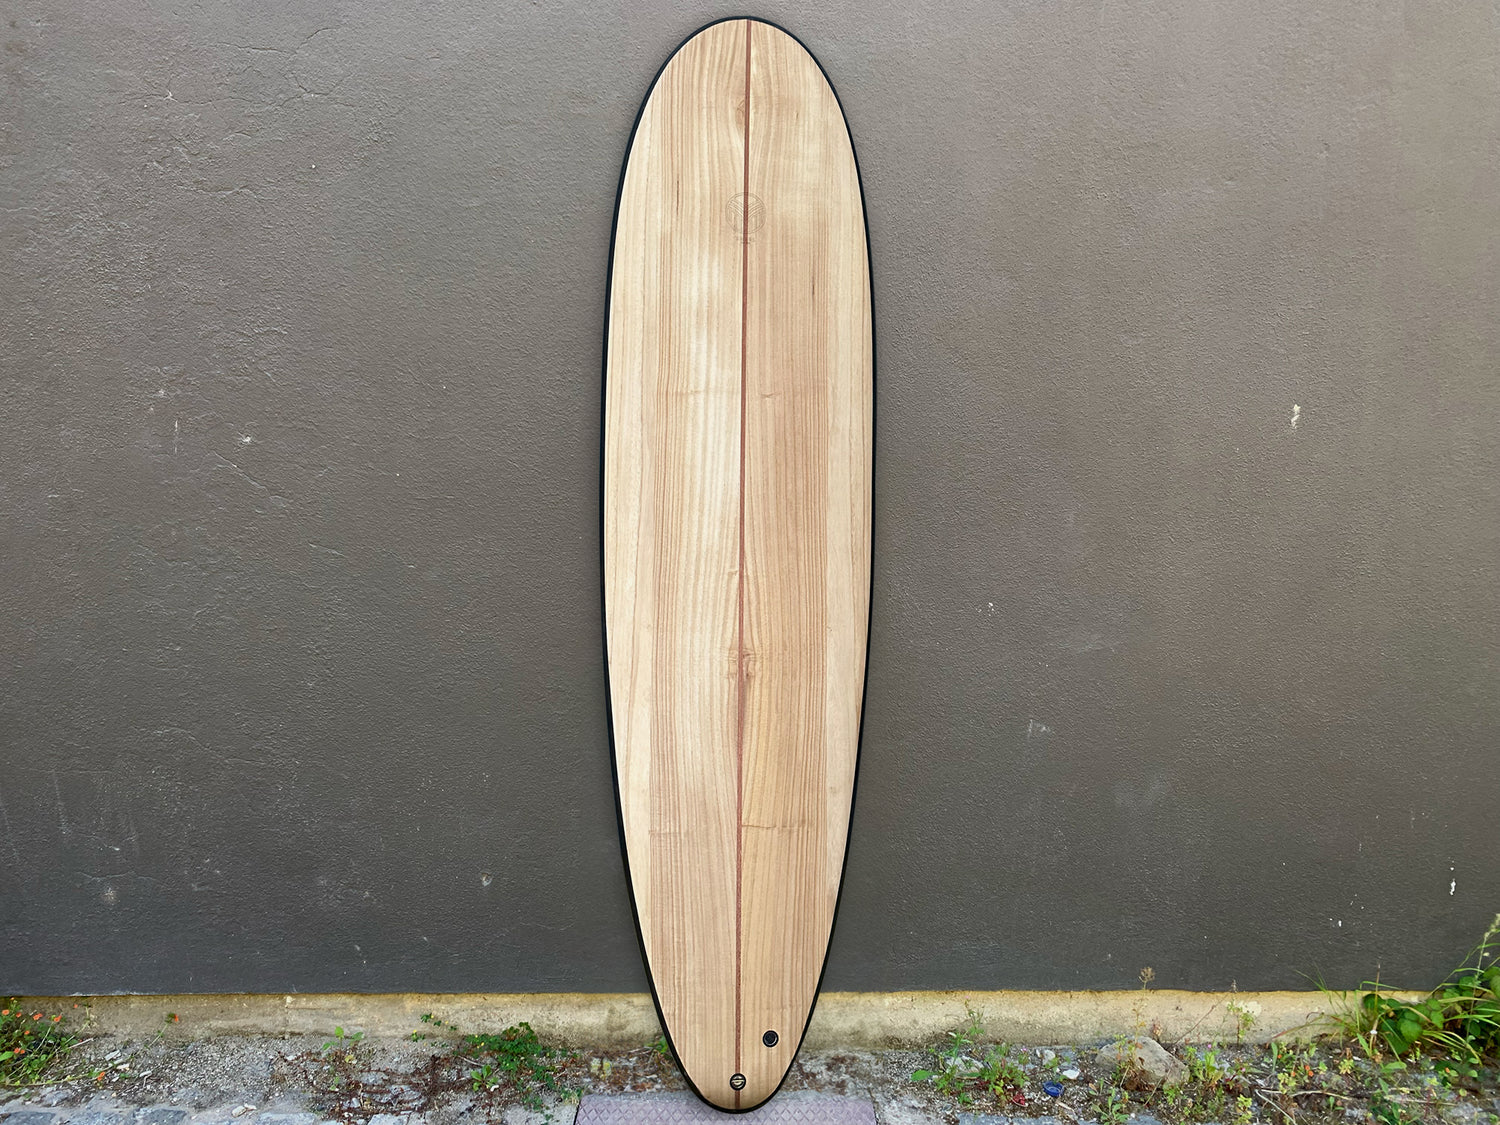 Surfboard 6'10’’ BACKWOOD X REBEL FIN - REBEL FIN CO.